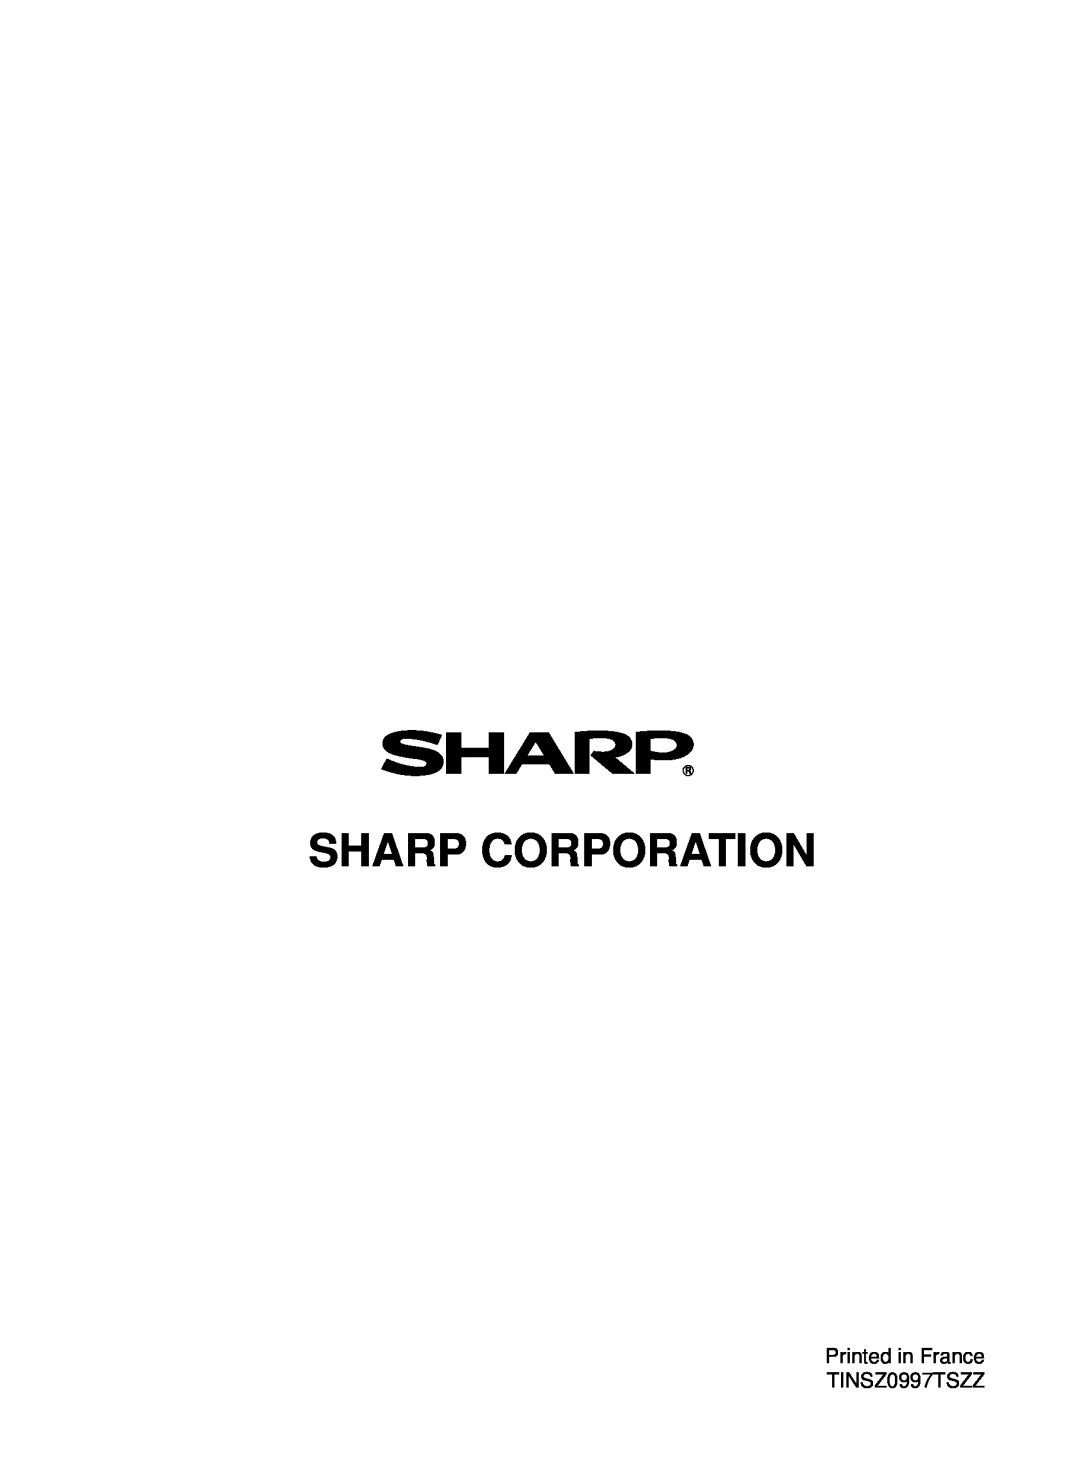 Sharp AR-152E N, AR-122E N, AR-153E N manual Sharp Corporation, Printed in France TINSZ0997TSZZ 